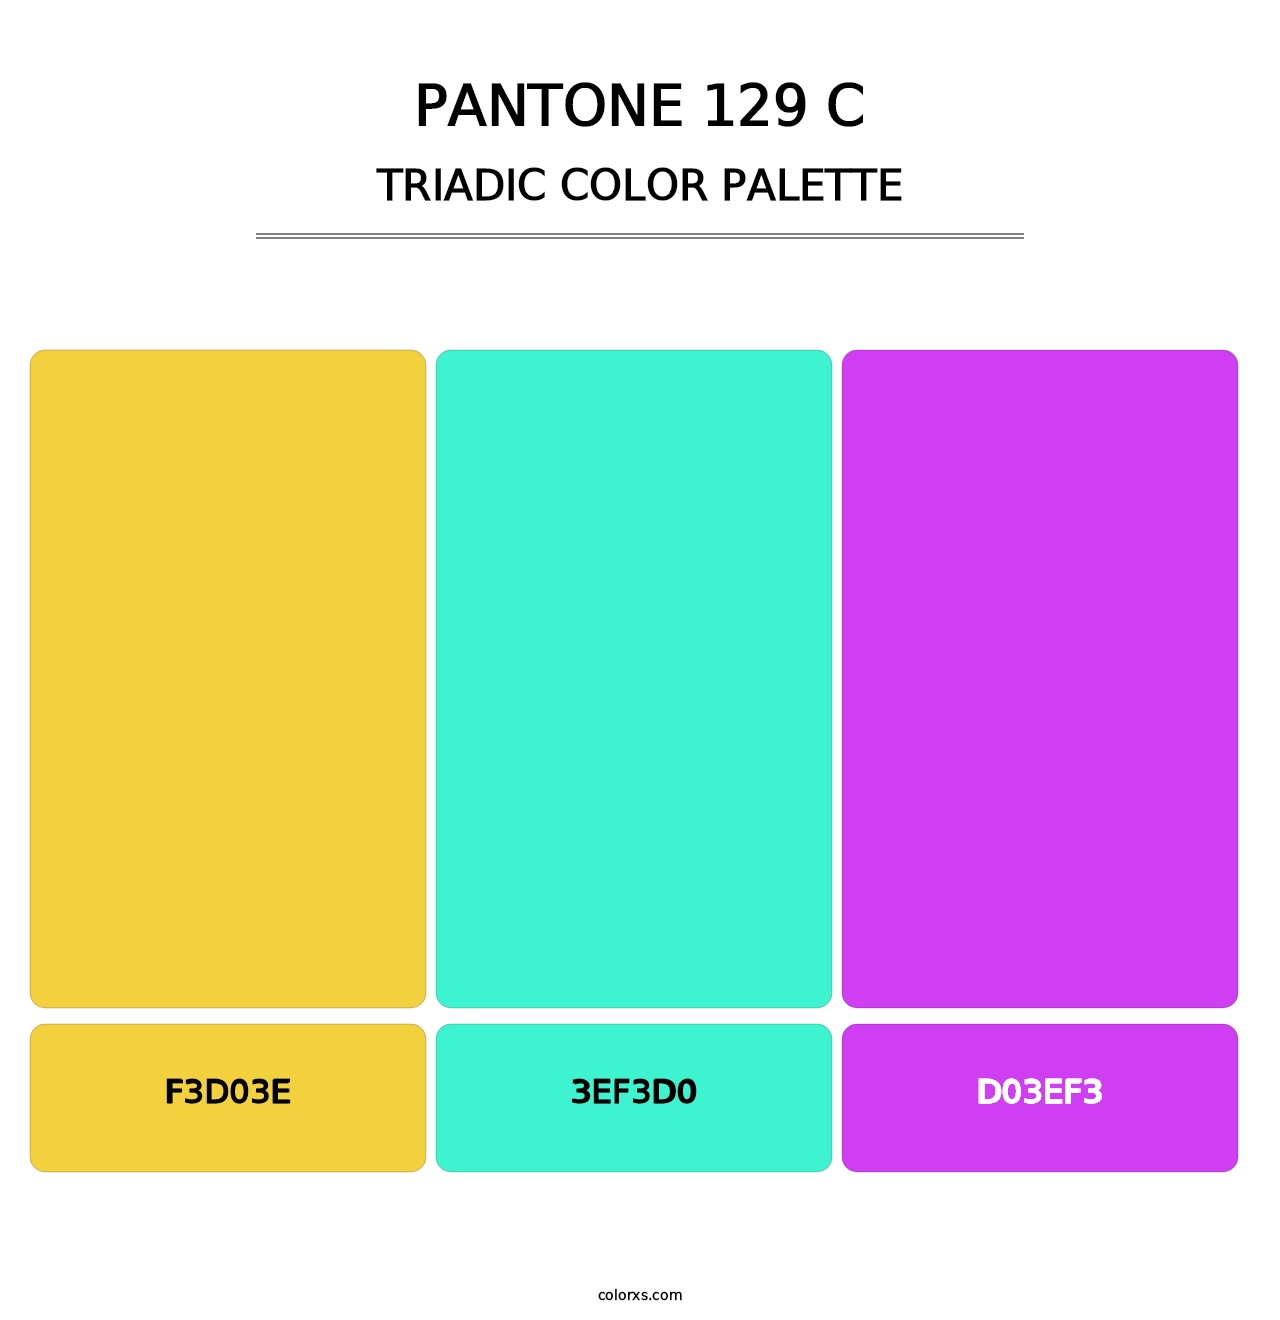 PANTONE 129 C - Triadic Color Palette